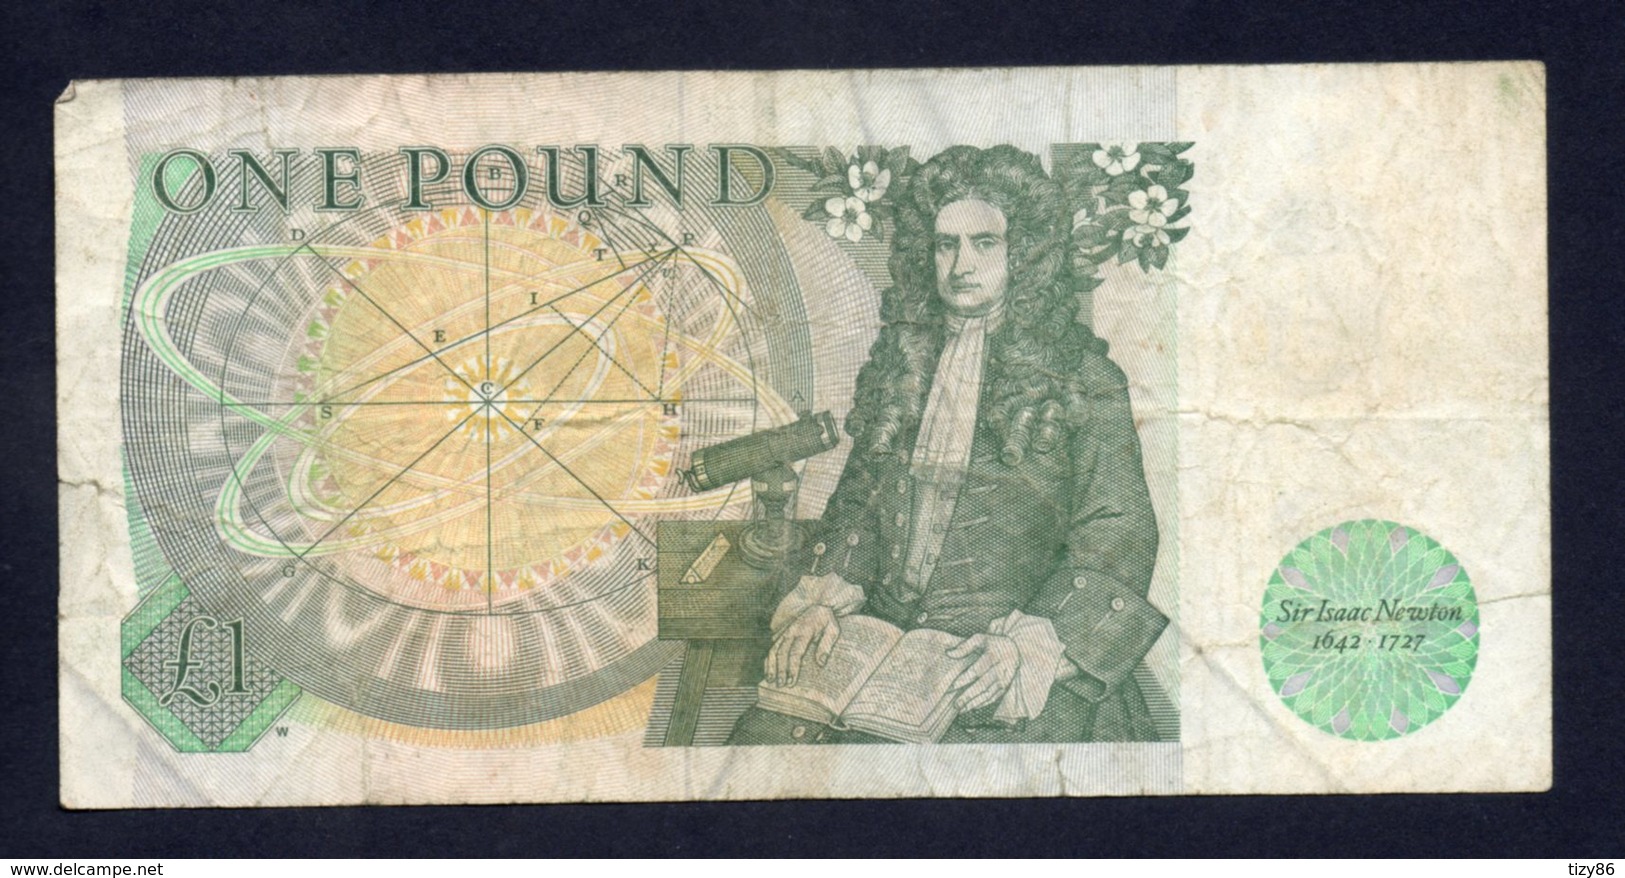 Banconota Gran Bretagna 1 Pound 1978/84 - 1 Pound